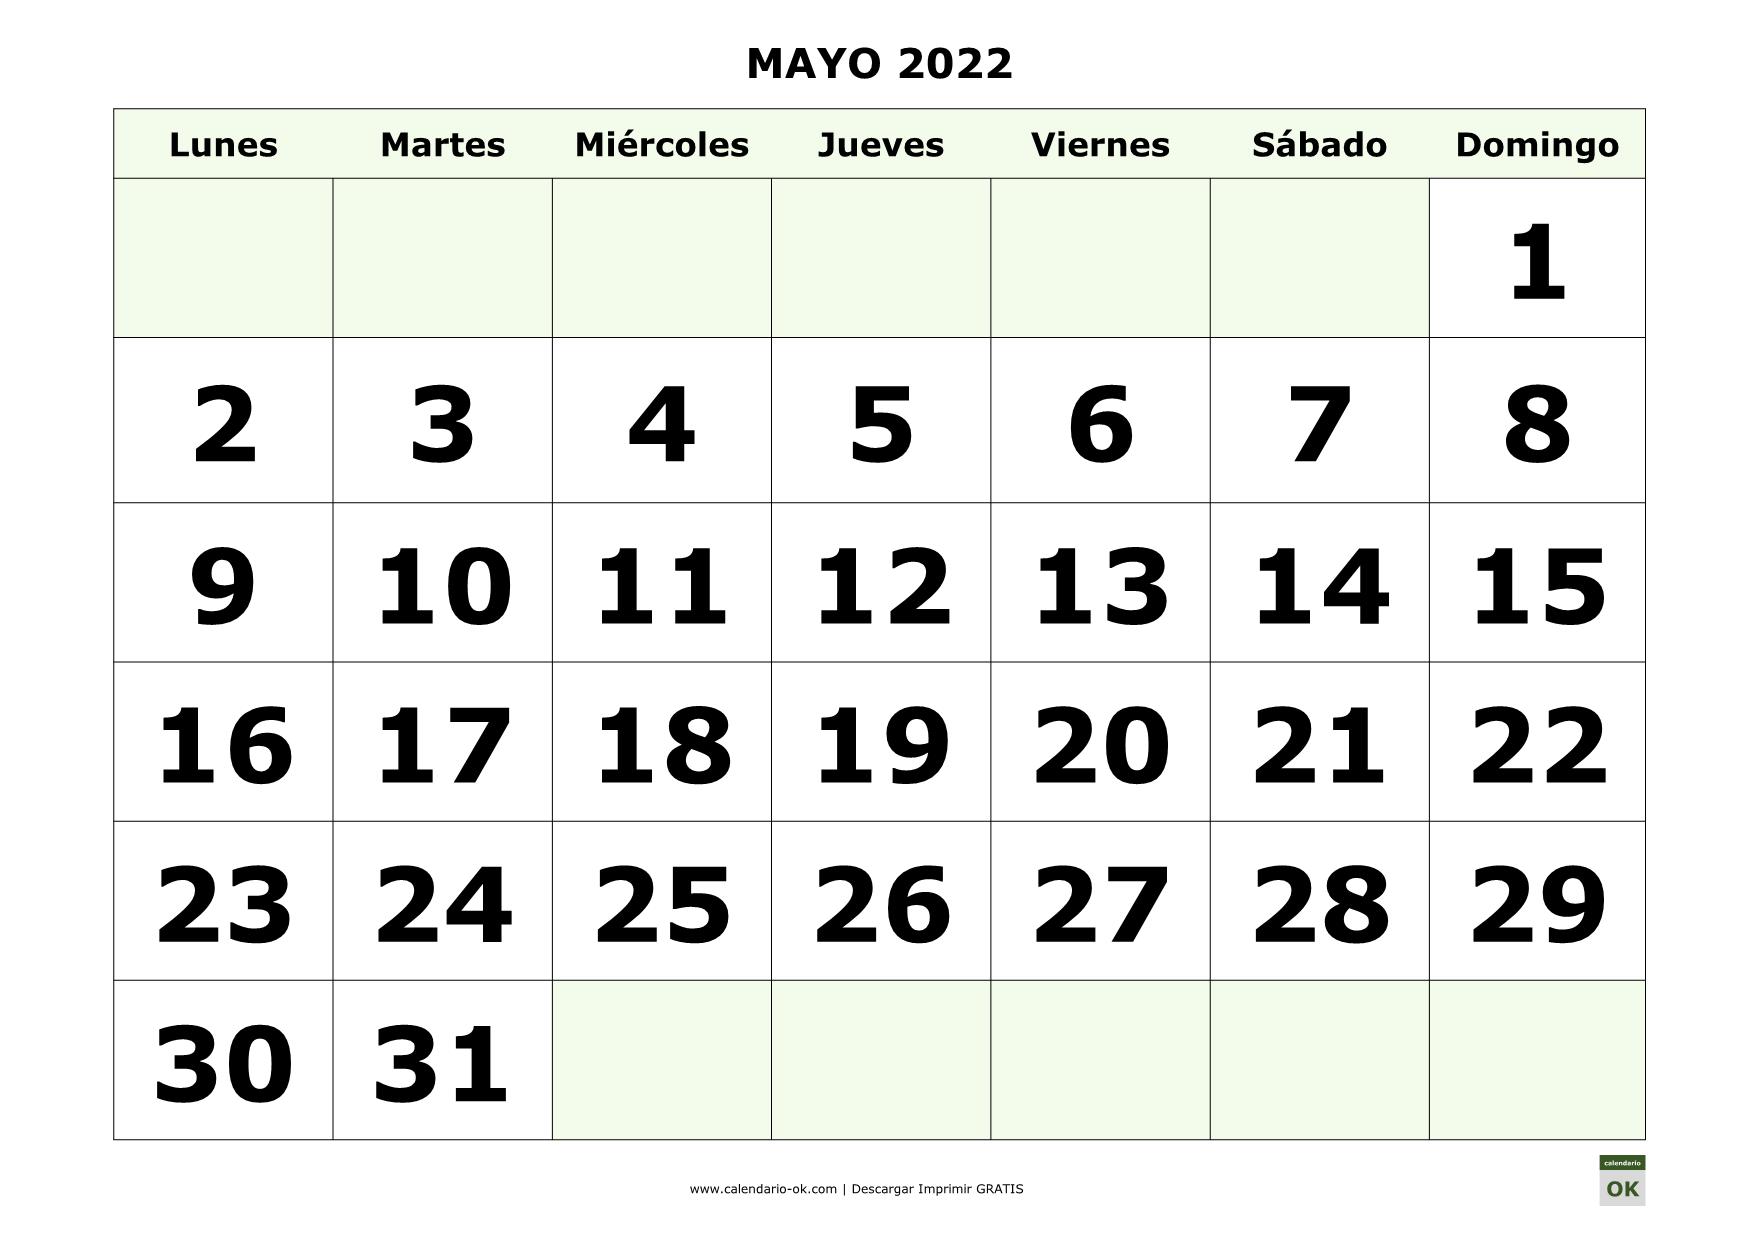 MAYO 2022 con NUMEROS GRANDES